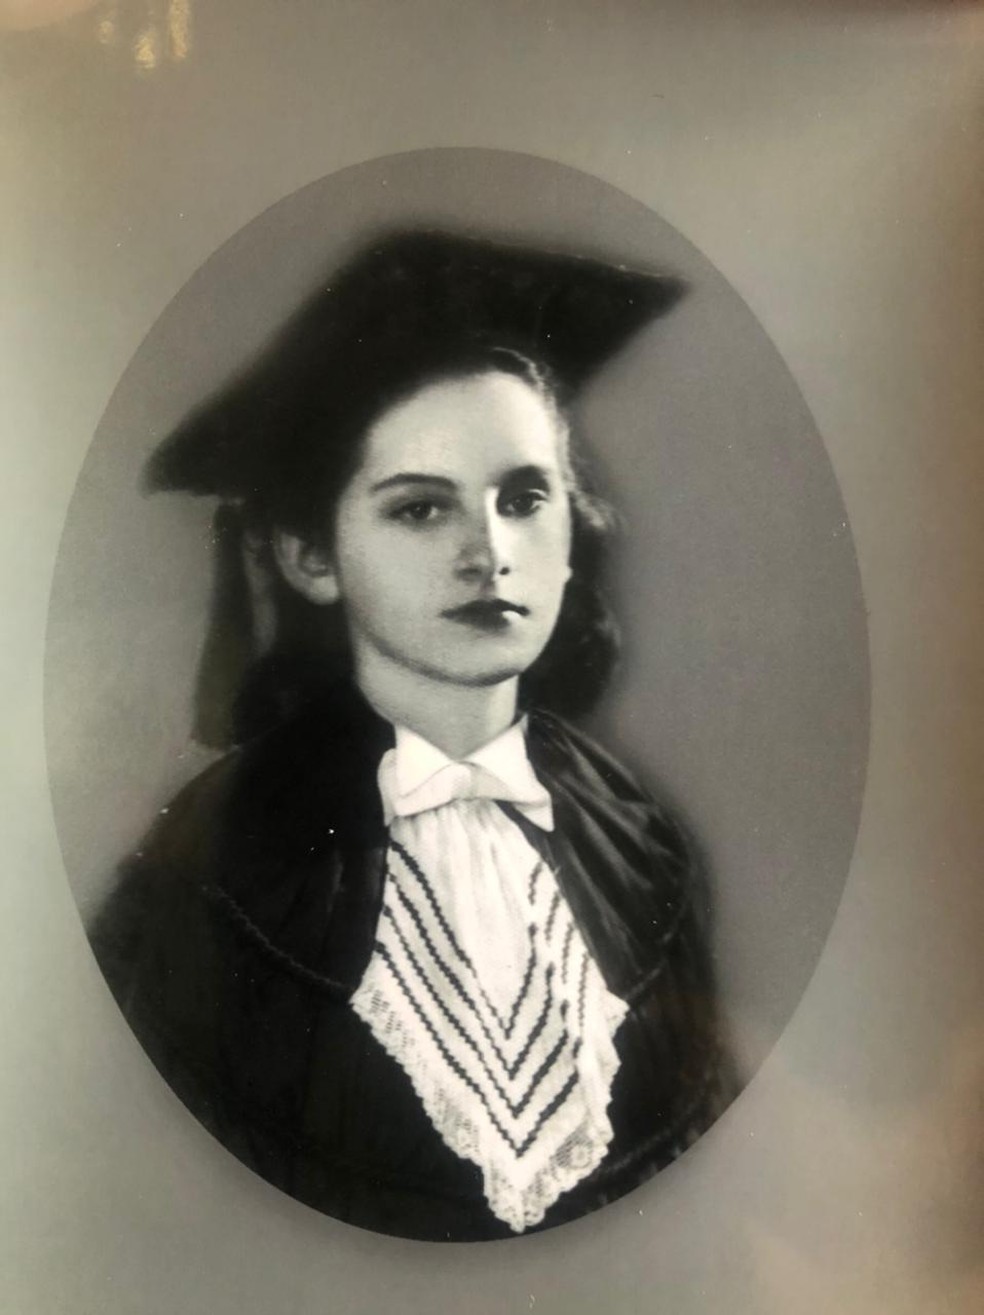 Anarlete formou-se professora com apenas 18 anos, em 1940 — Foto: Arquivo Pessoal/Anarlete Gondim